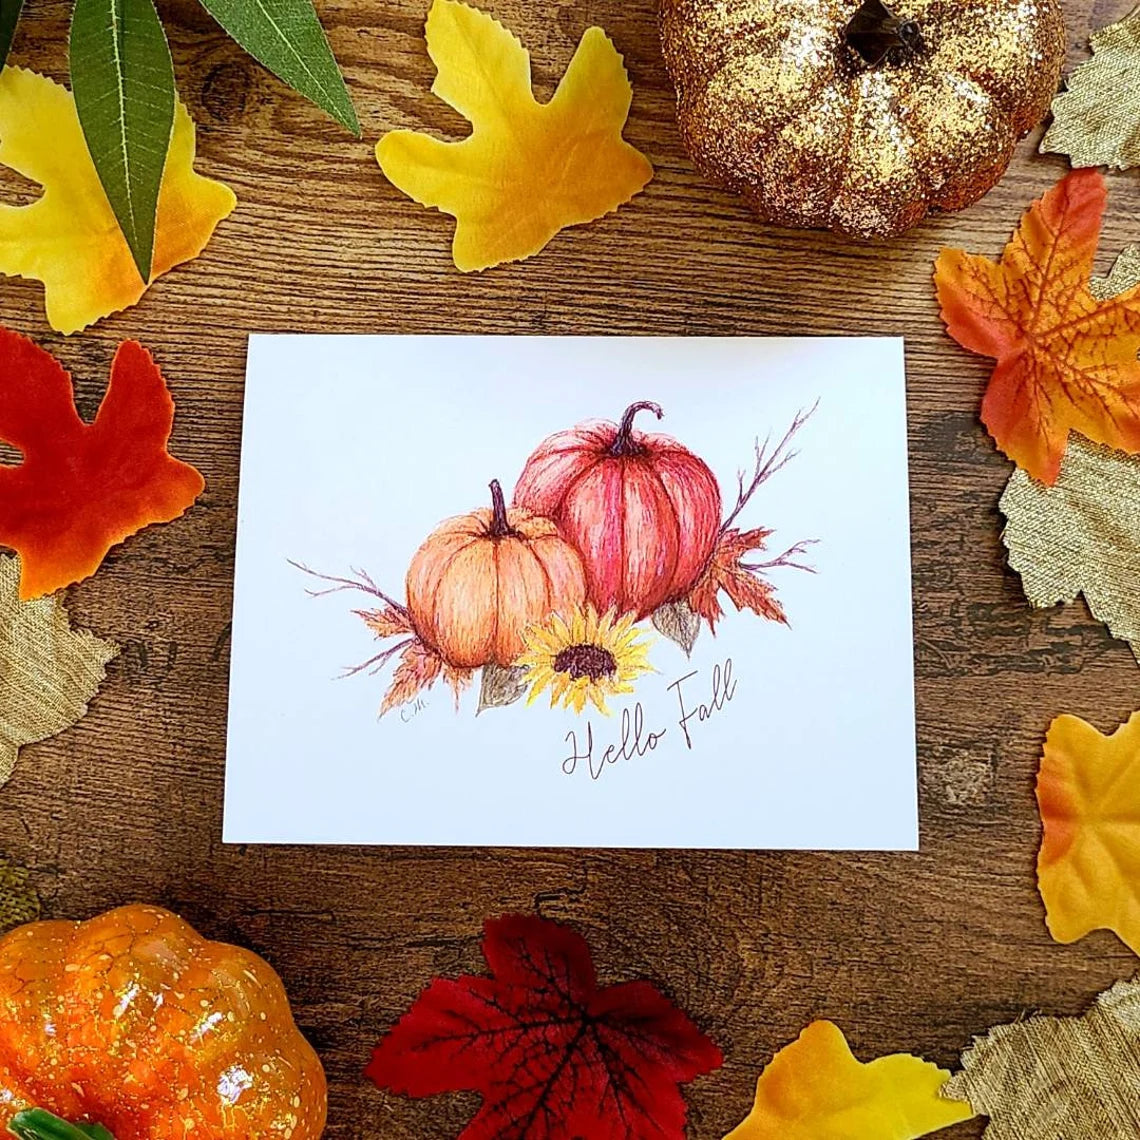 Hello fall card, Fall Pumpkin card, Thanksgiving card, Vintage pumpkin Halloween, Fall vibes, Cute pumpkin card, Happy fall pumpkins,